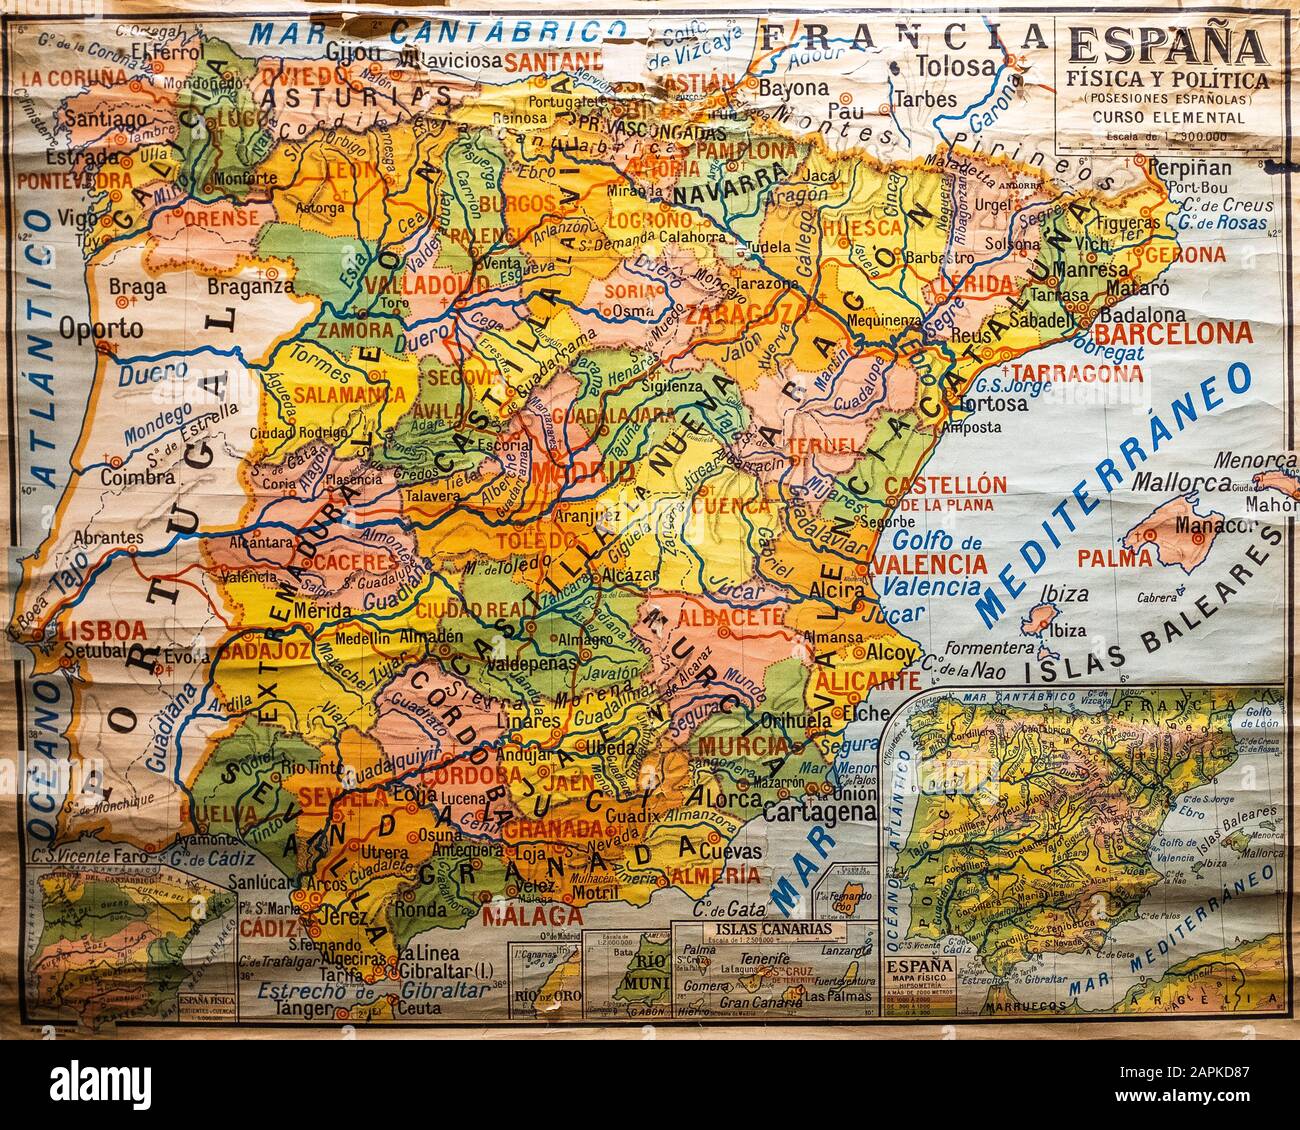 Mappa della scuola d'epoca della Spagna, risalente al secolo scorso, con mappe inset delle Isole Canarie e possedimenti spagnoli. I dettagli includono latitudine/lunghezza Foto Stock